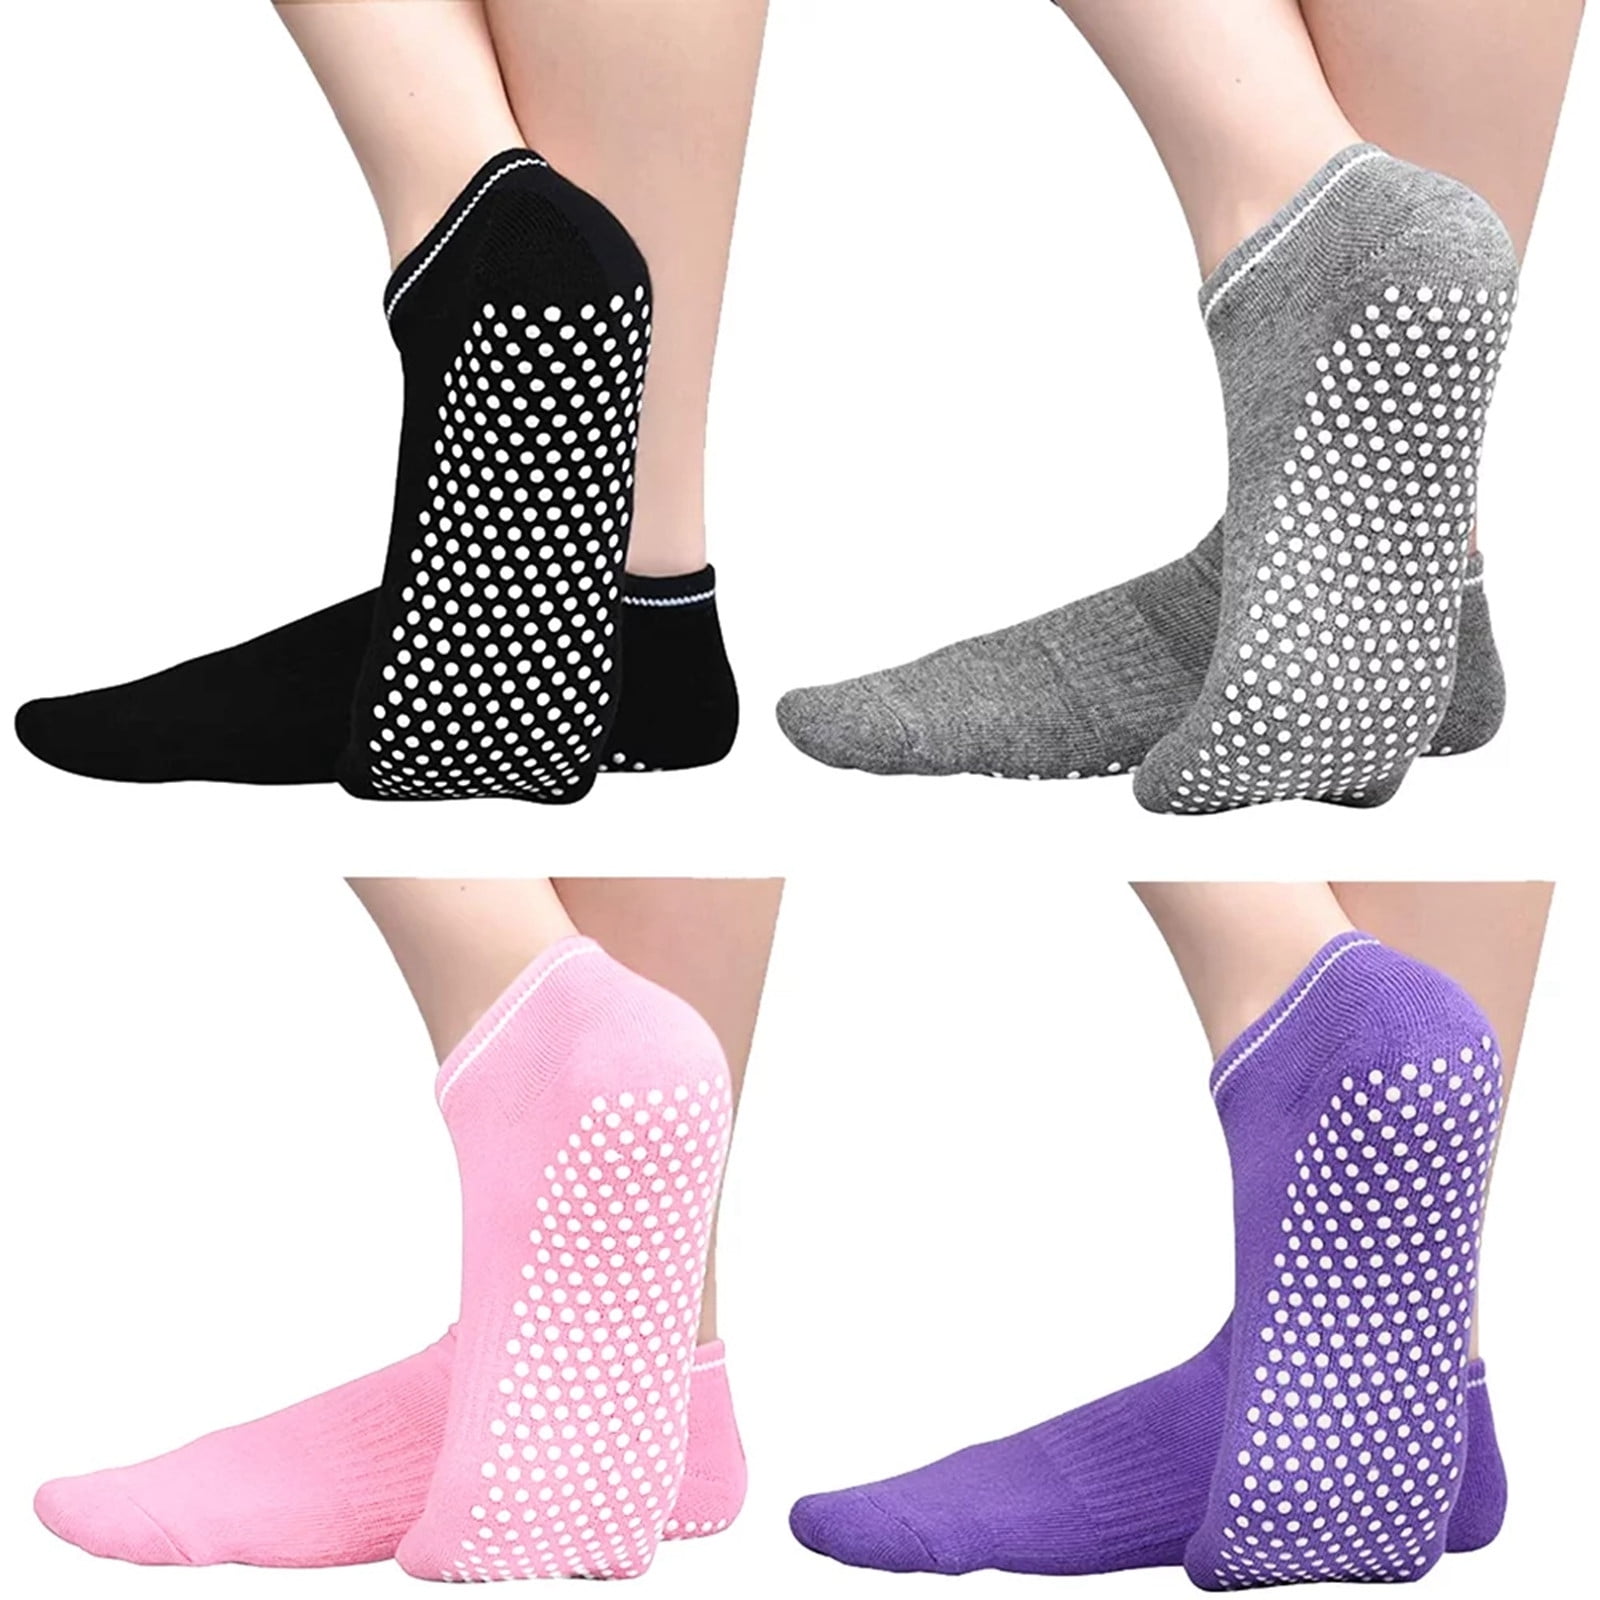 Pilates Grip Socks For Women - Non-Slip Socks, Yoga Socks, Gym